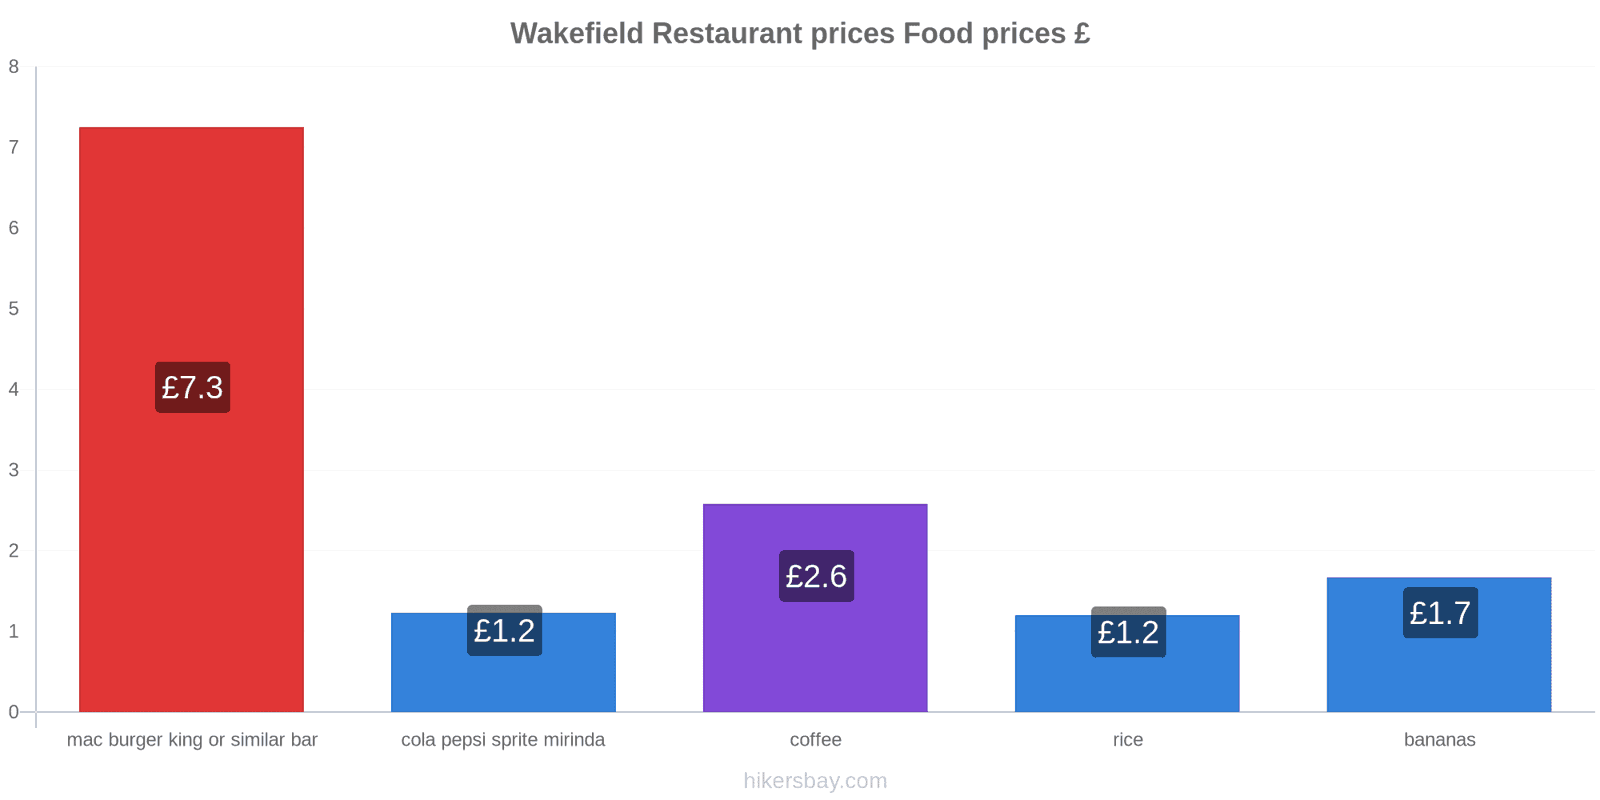 Wakefield price changes hikersbay.com